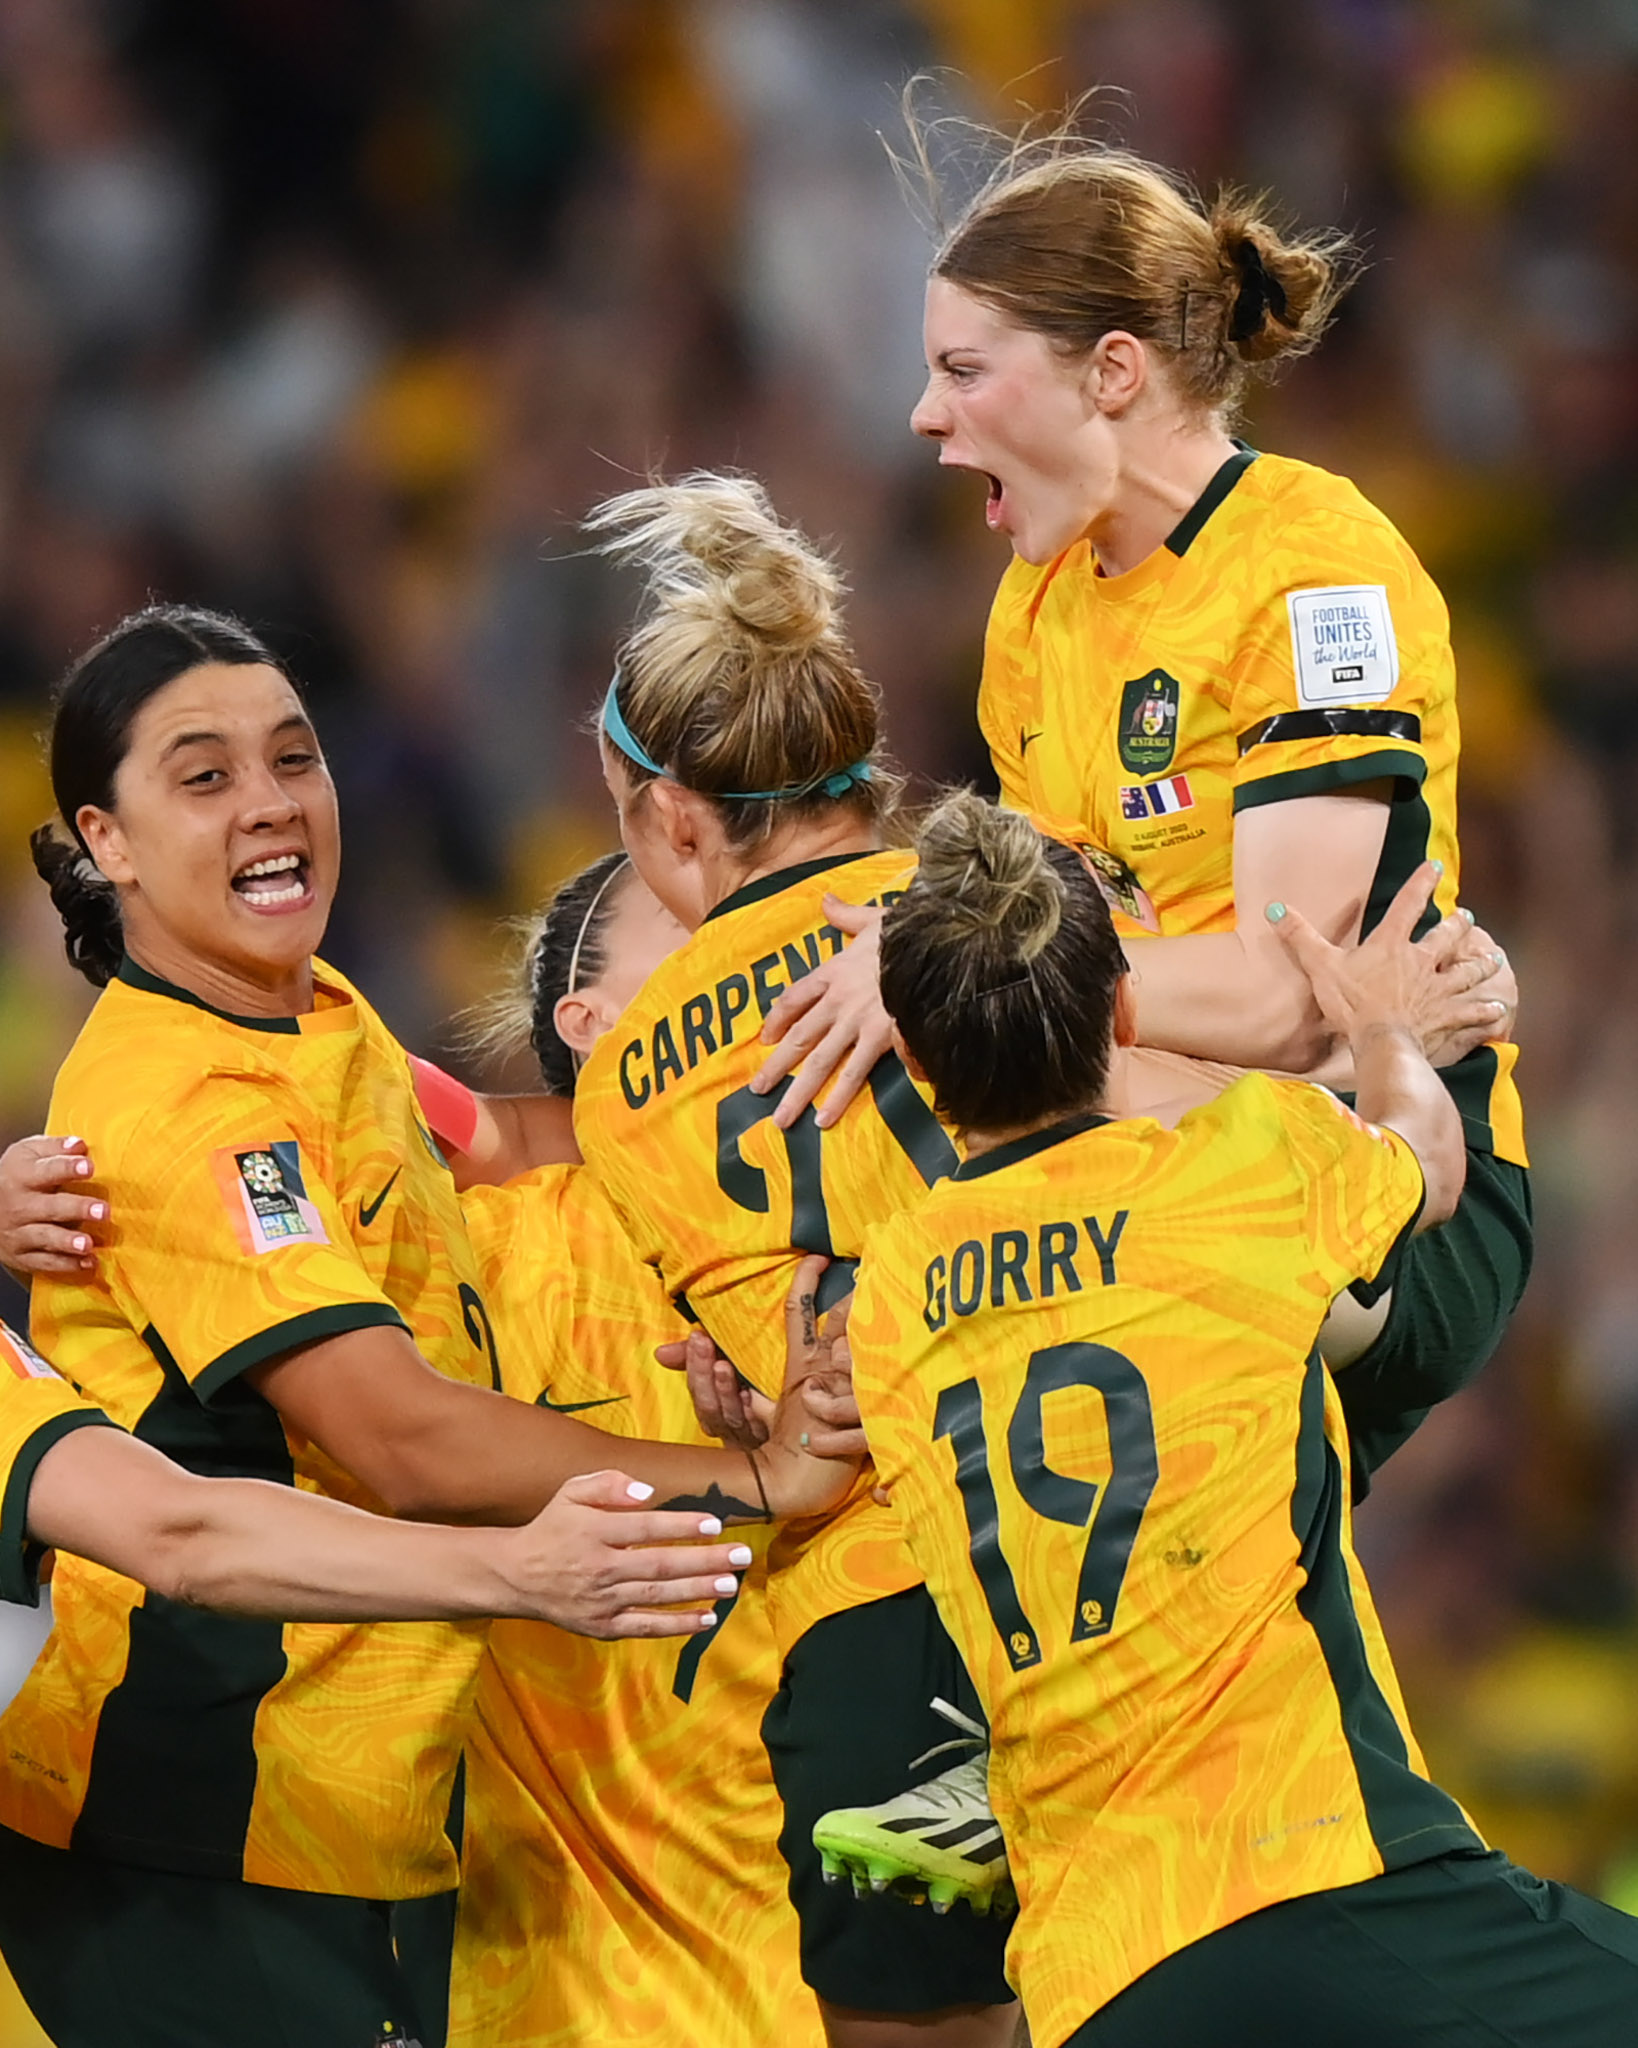 Thụy Điển, Anh, Tây Ban Nha và chủ nhà Úc cùng đứng trước cơ hội lịch sử tại World Cup - Ảnh 2.